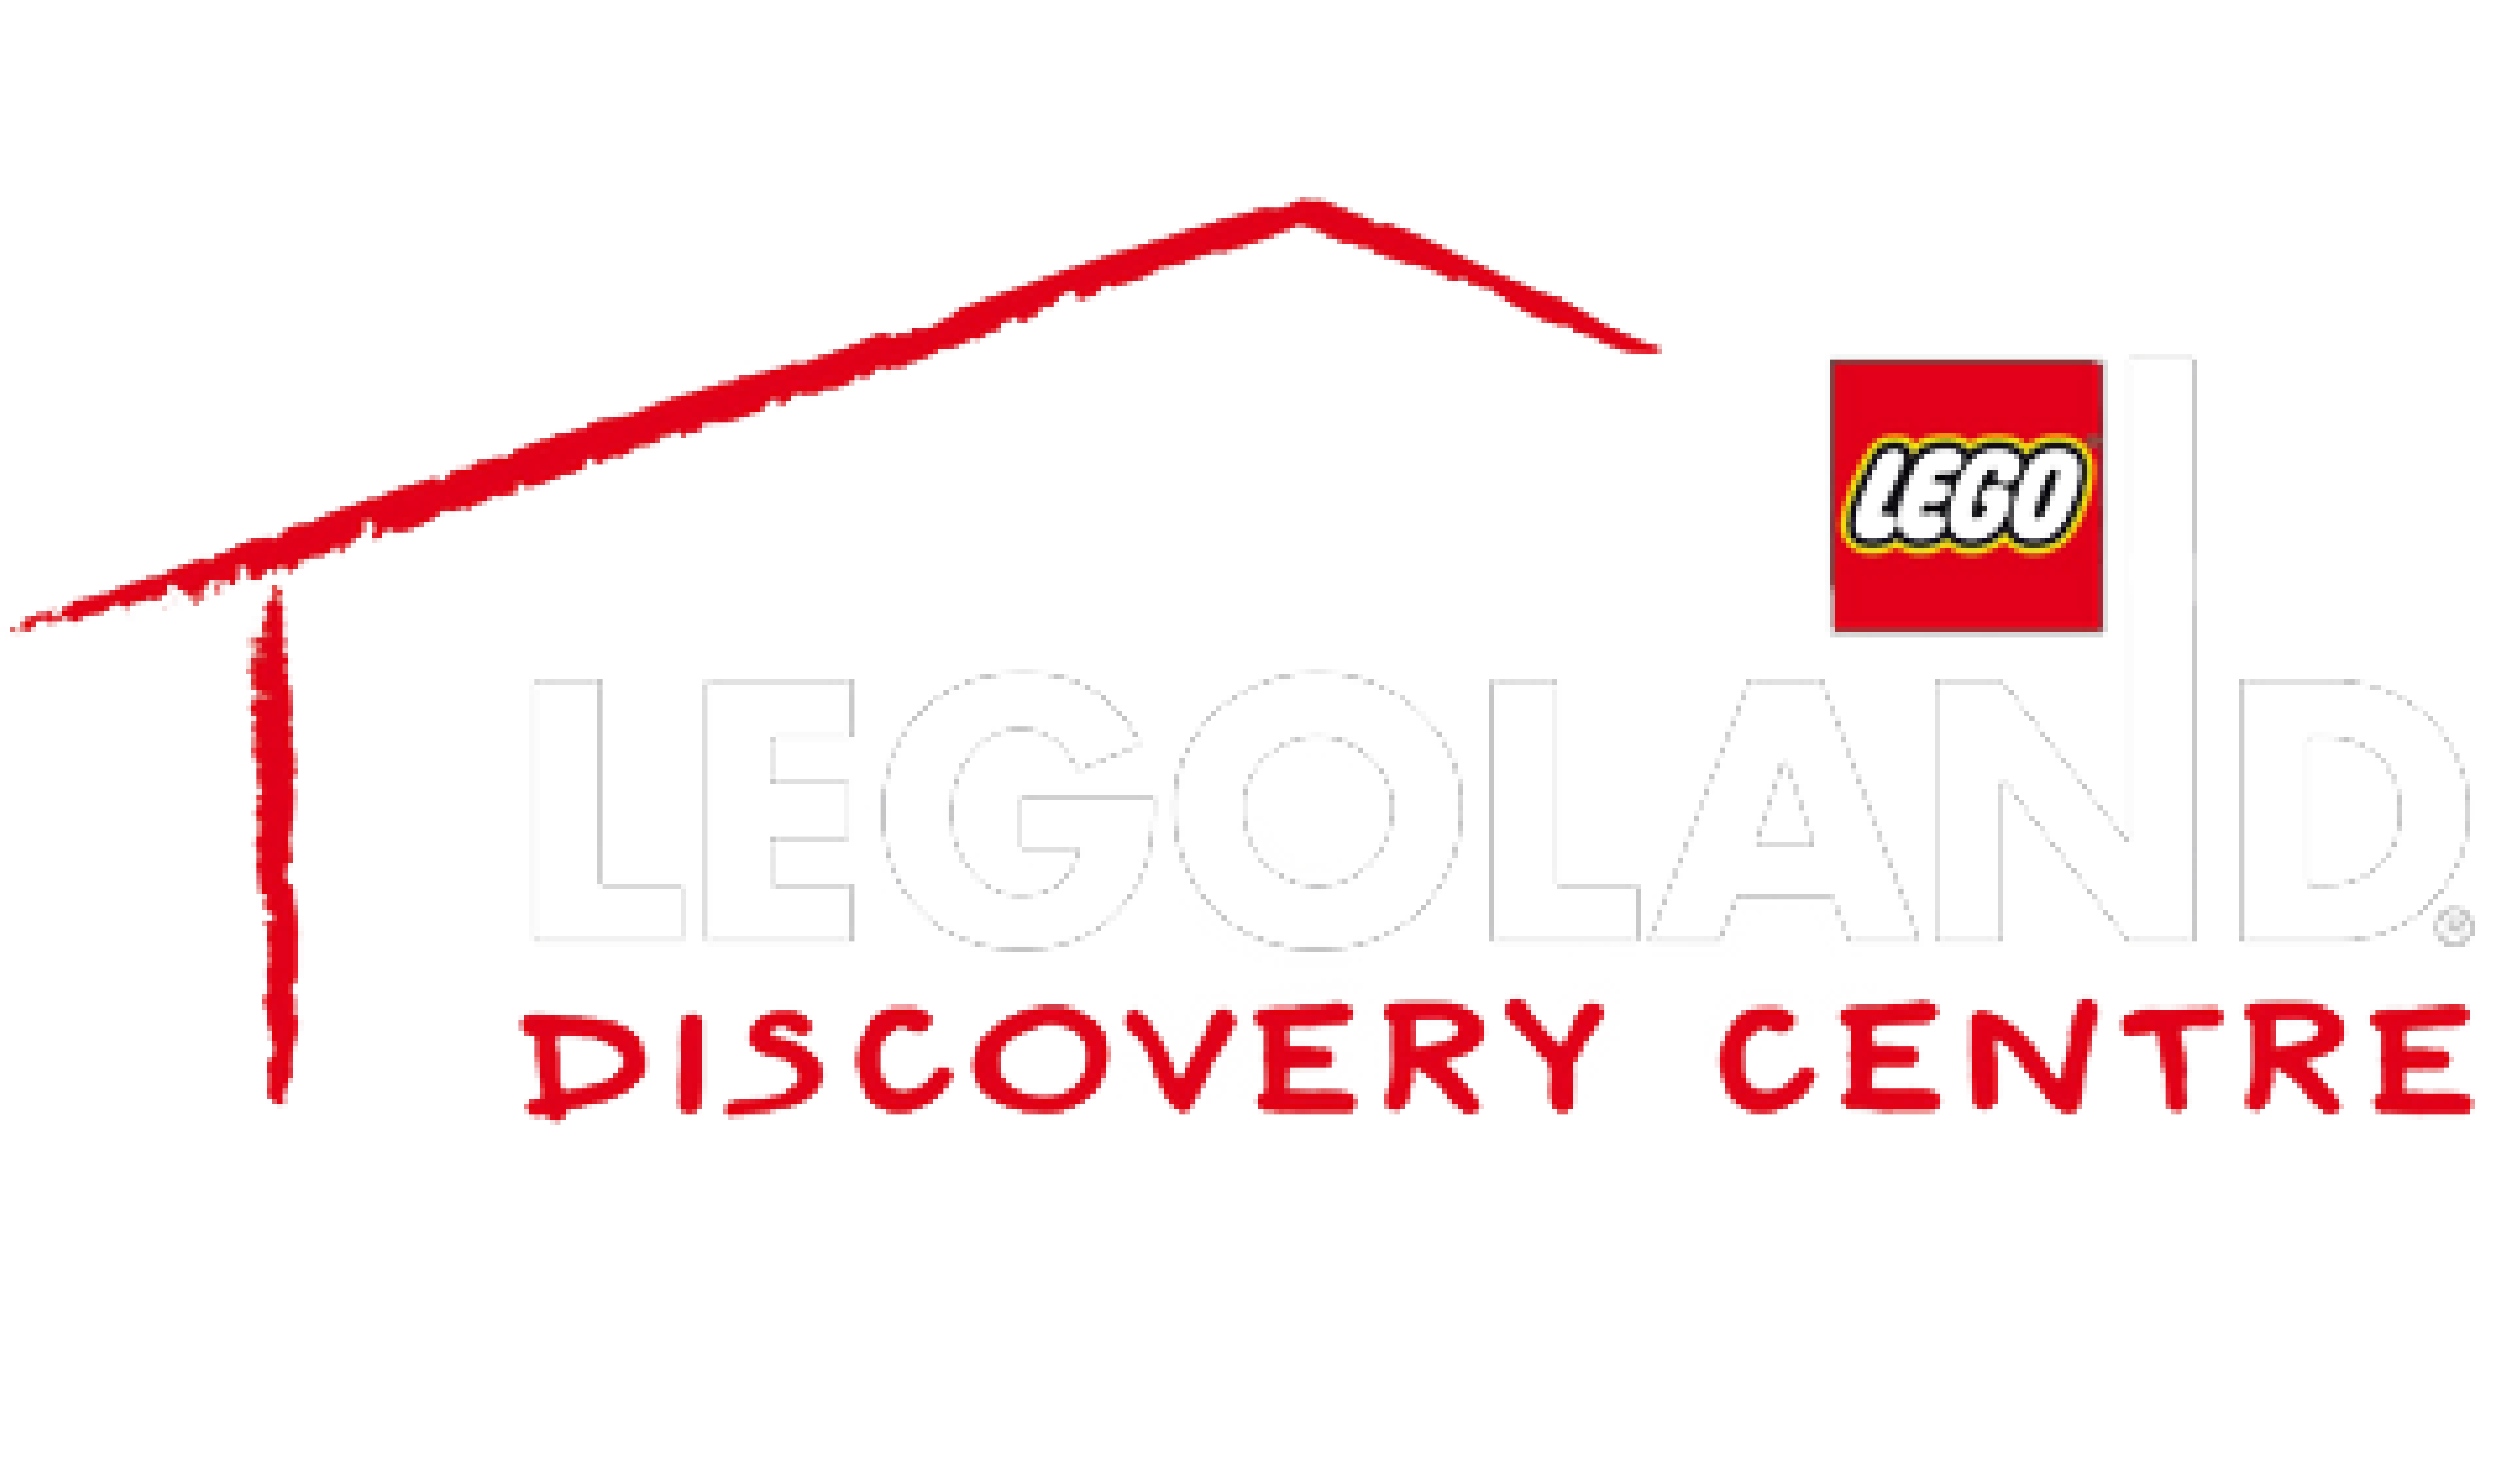 LEGOland discovery centre logo